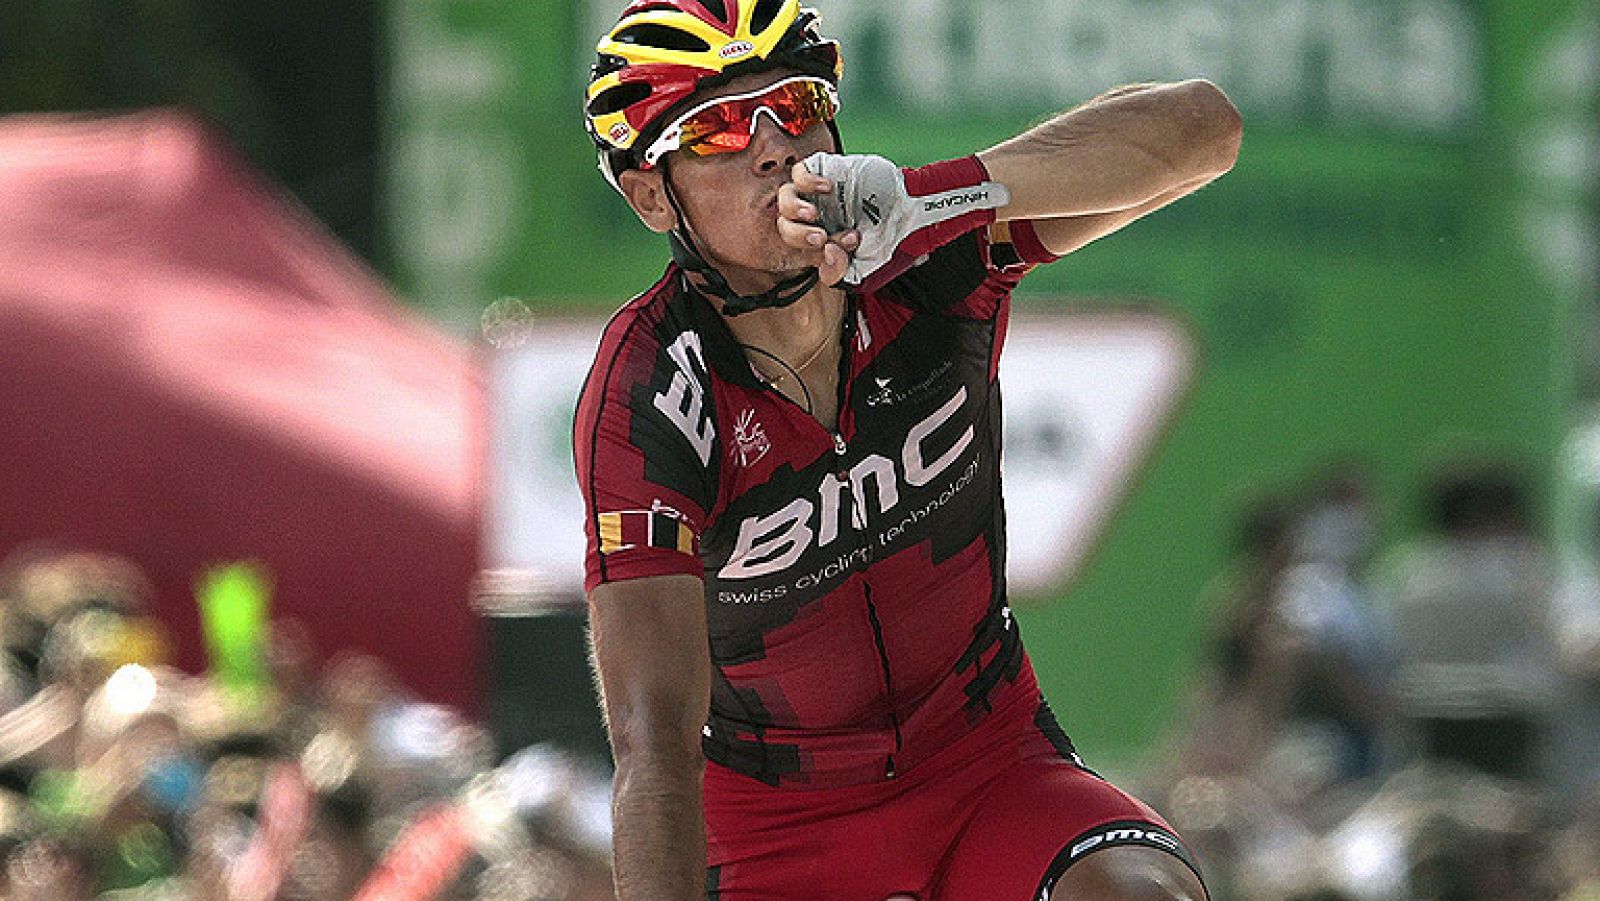 El ciclista belga de BMC Philippe Gilbert se ha hecho con la novena etapa de la Vuelta, al ganar al líder, 'Purito' Rodríguez, en la línea de meta de Barcelona, tras una emocionante subida a Montjuic.